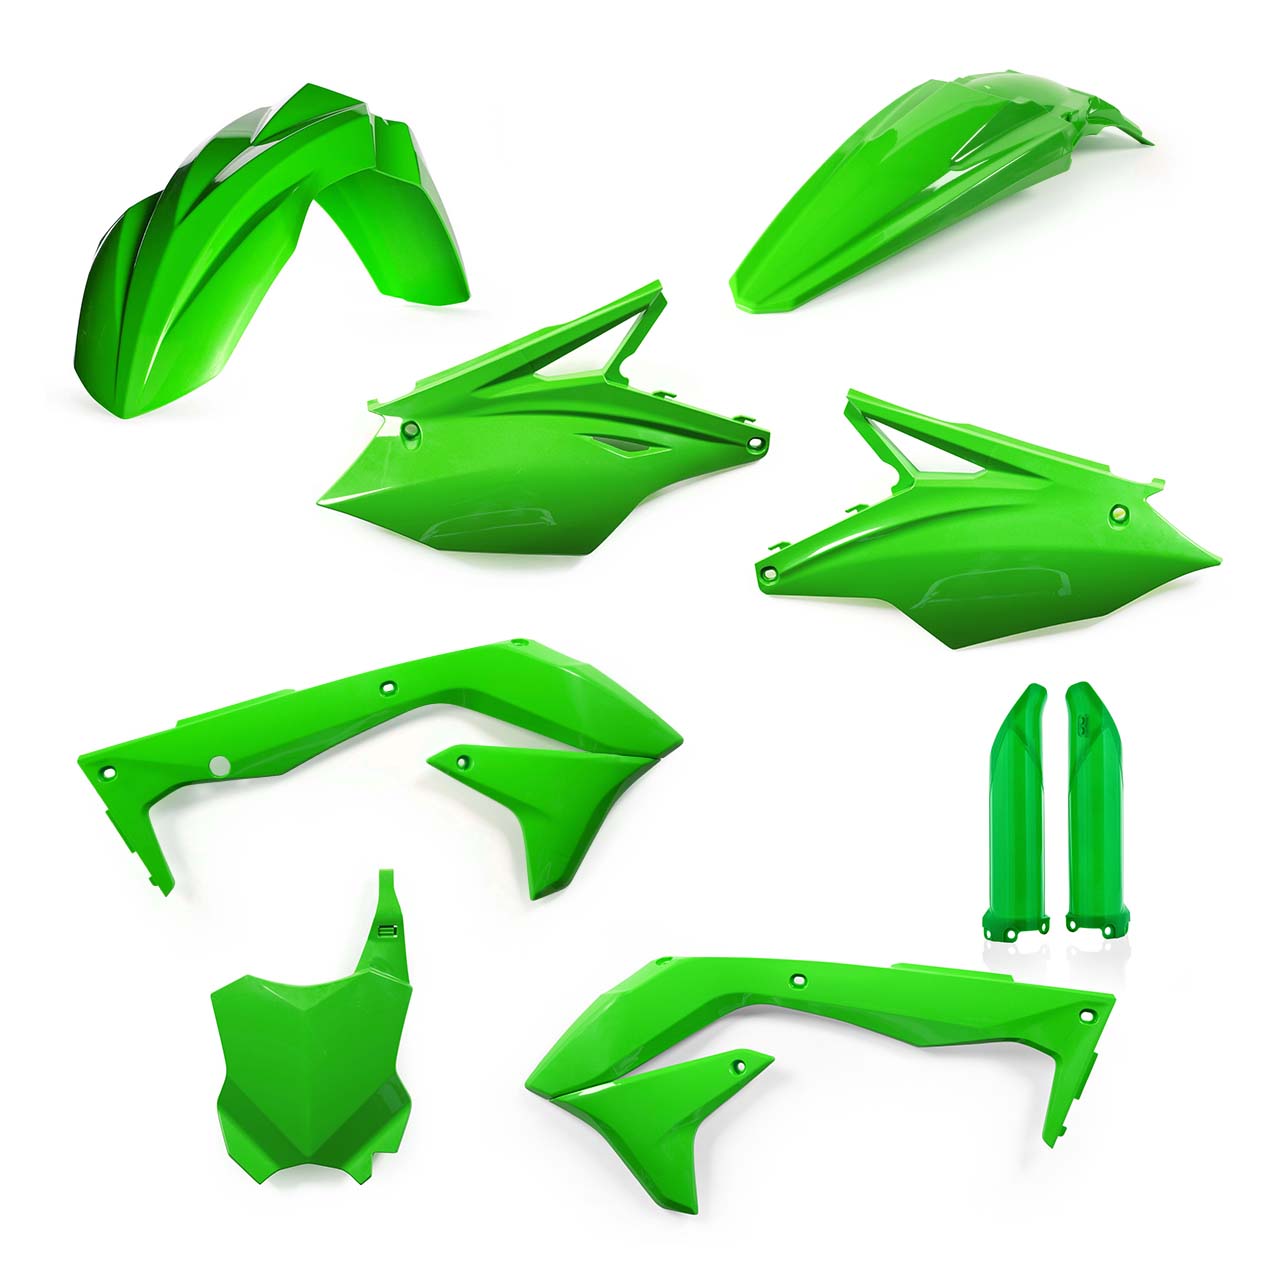 Plastikteile für deine Kawasaki KX 450 in grün bestehend aus Kotflügel vorn Kotflügel hinten Kühlerspoiler Seitenteile Gabelschützer Startnummerntafel